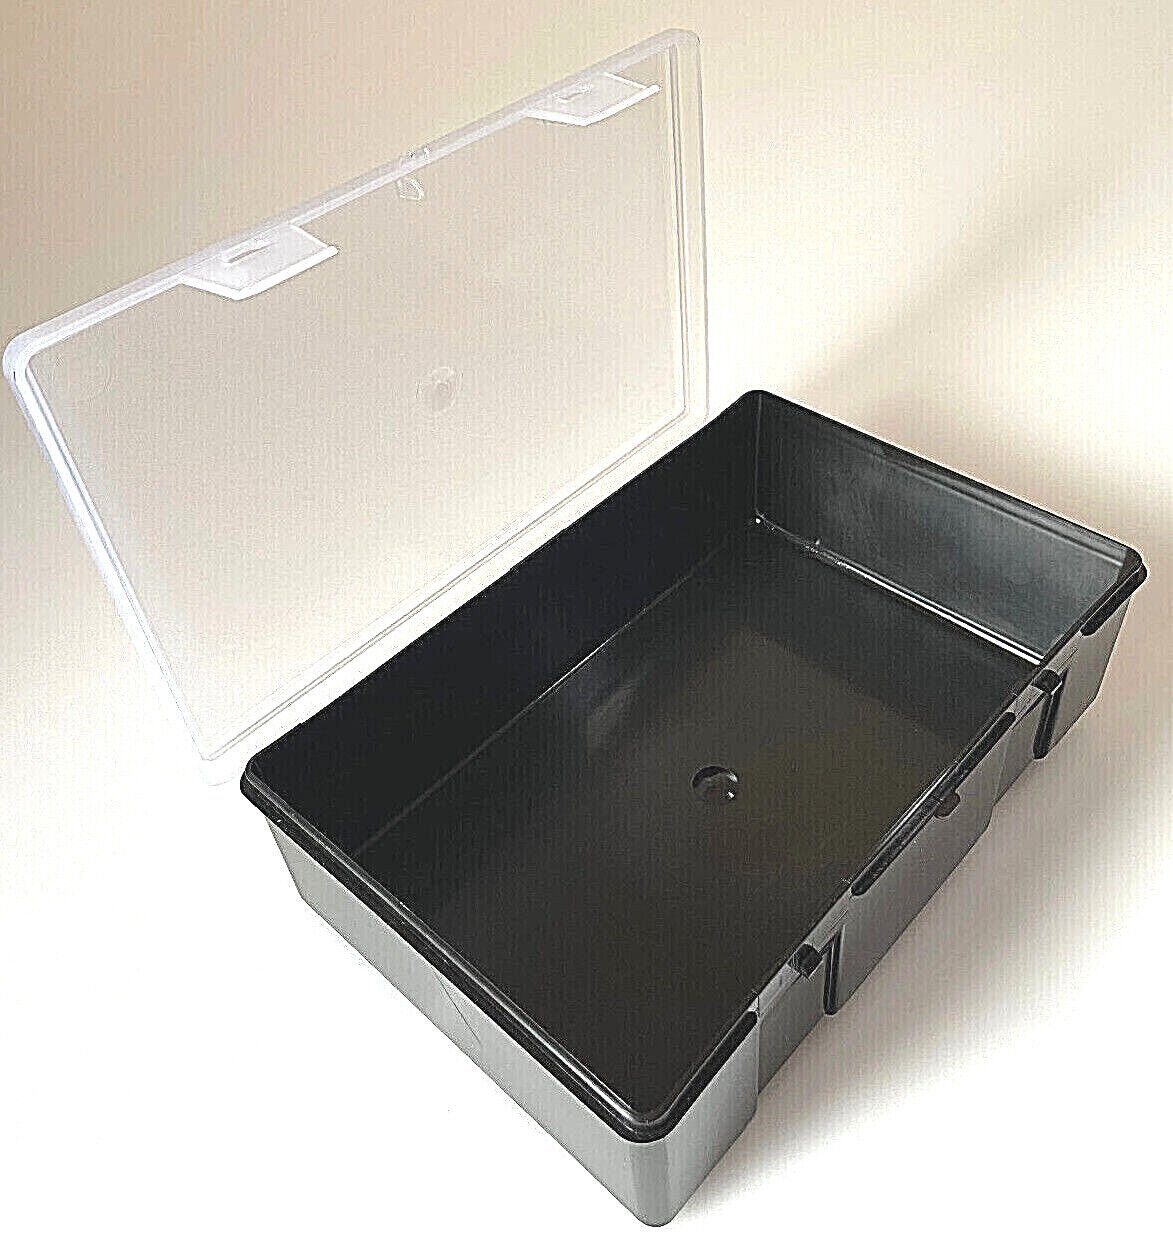 Angelkoffer Behälter MaXi - Karpfenbox Tackle BoX 2,5L Anplast Medizinbox Angelkiste Grün